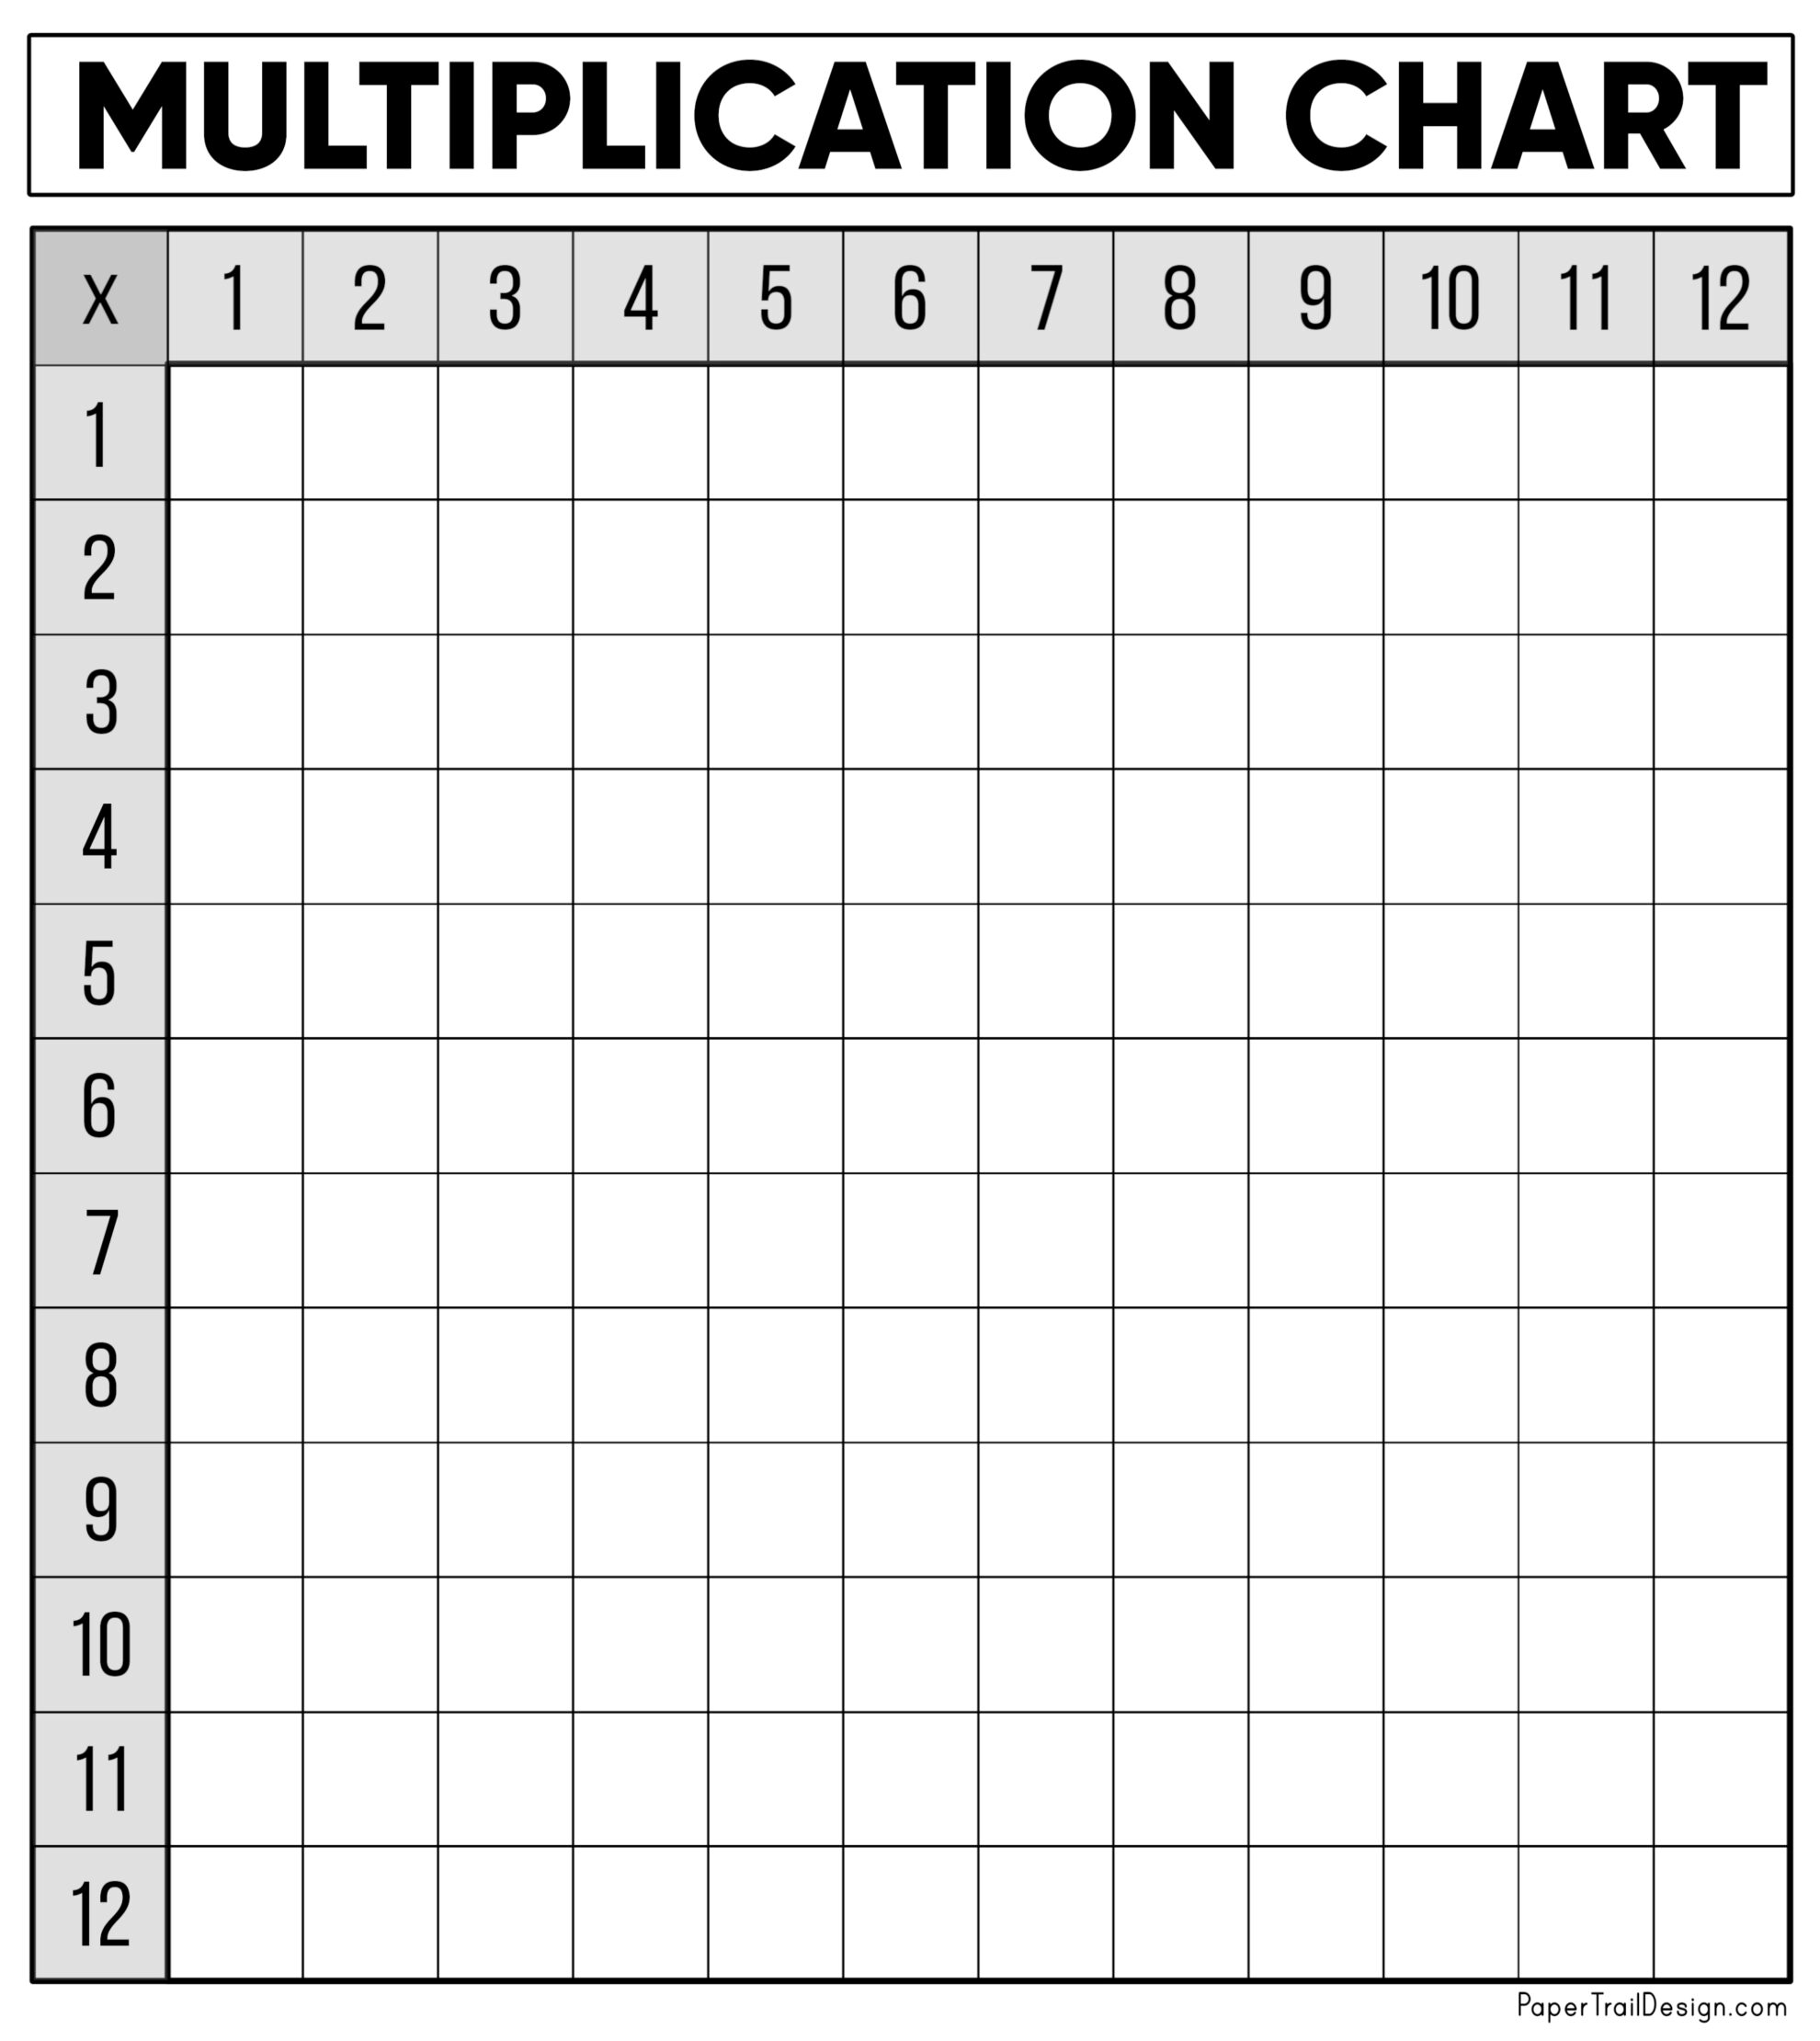 free-printable-blank-multiplication-chart-printable-world-holiday